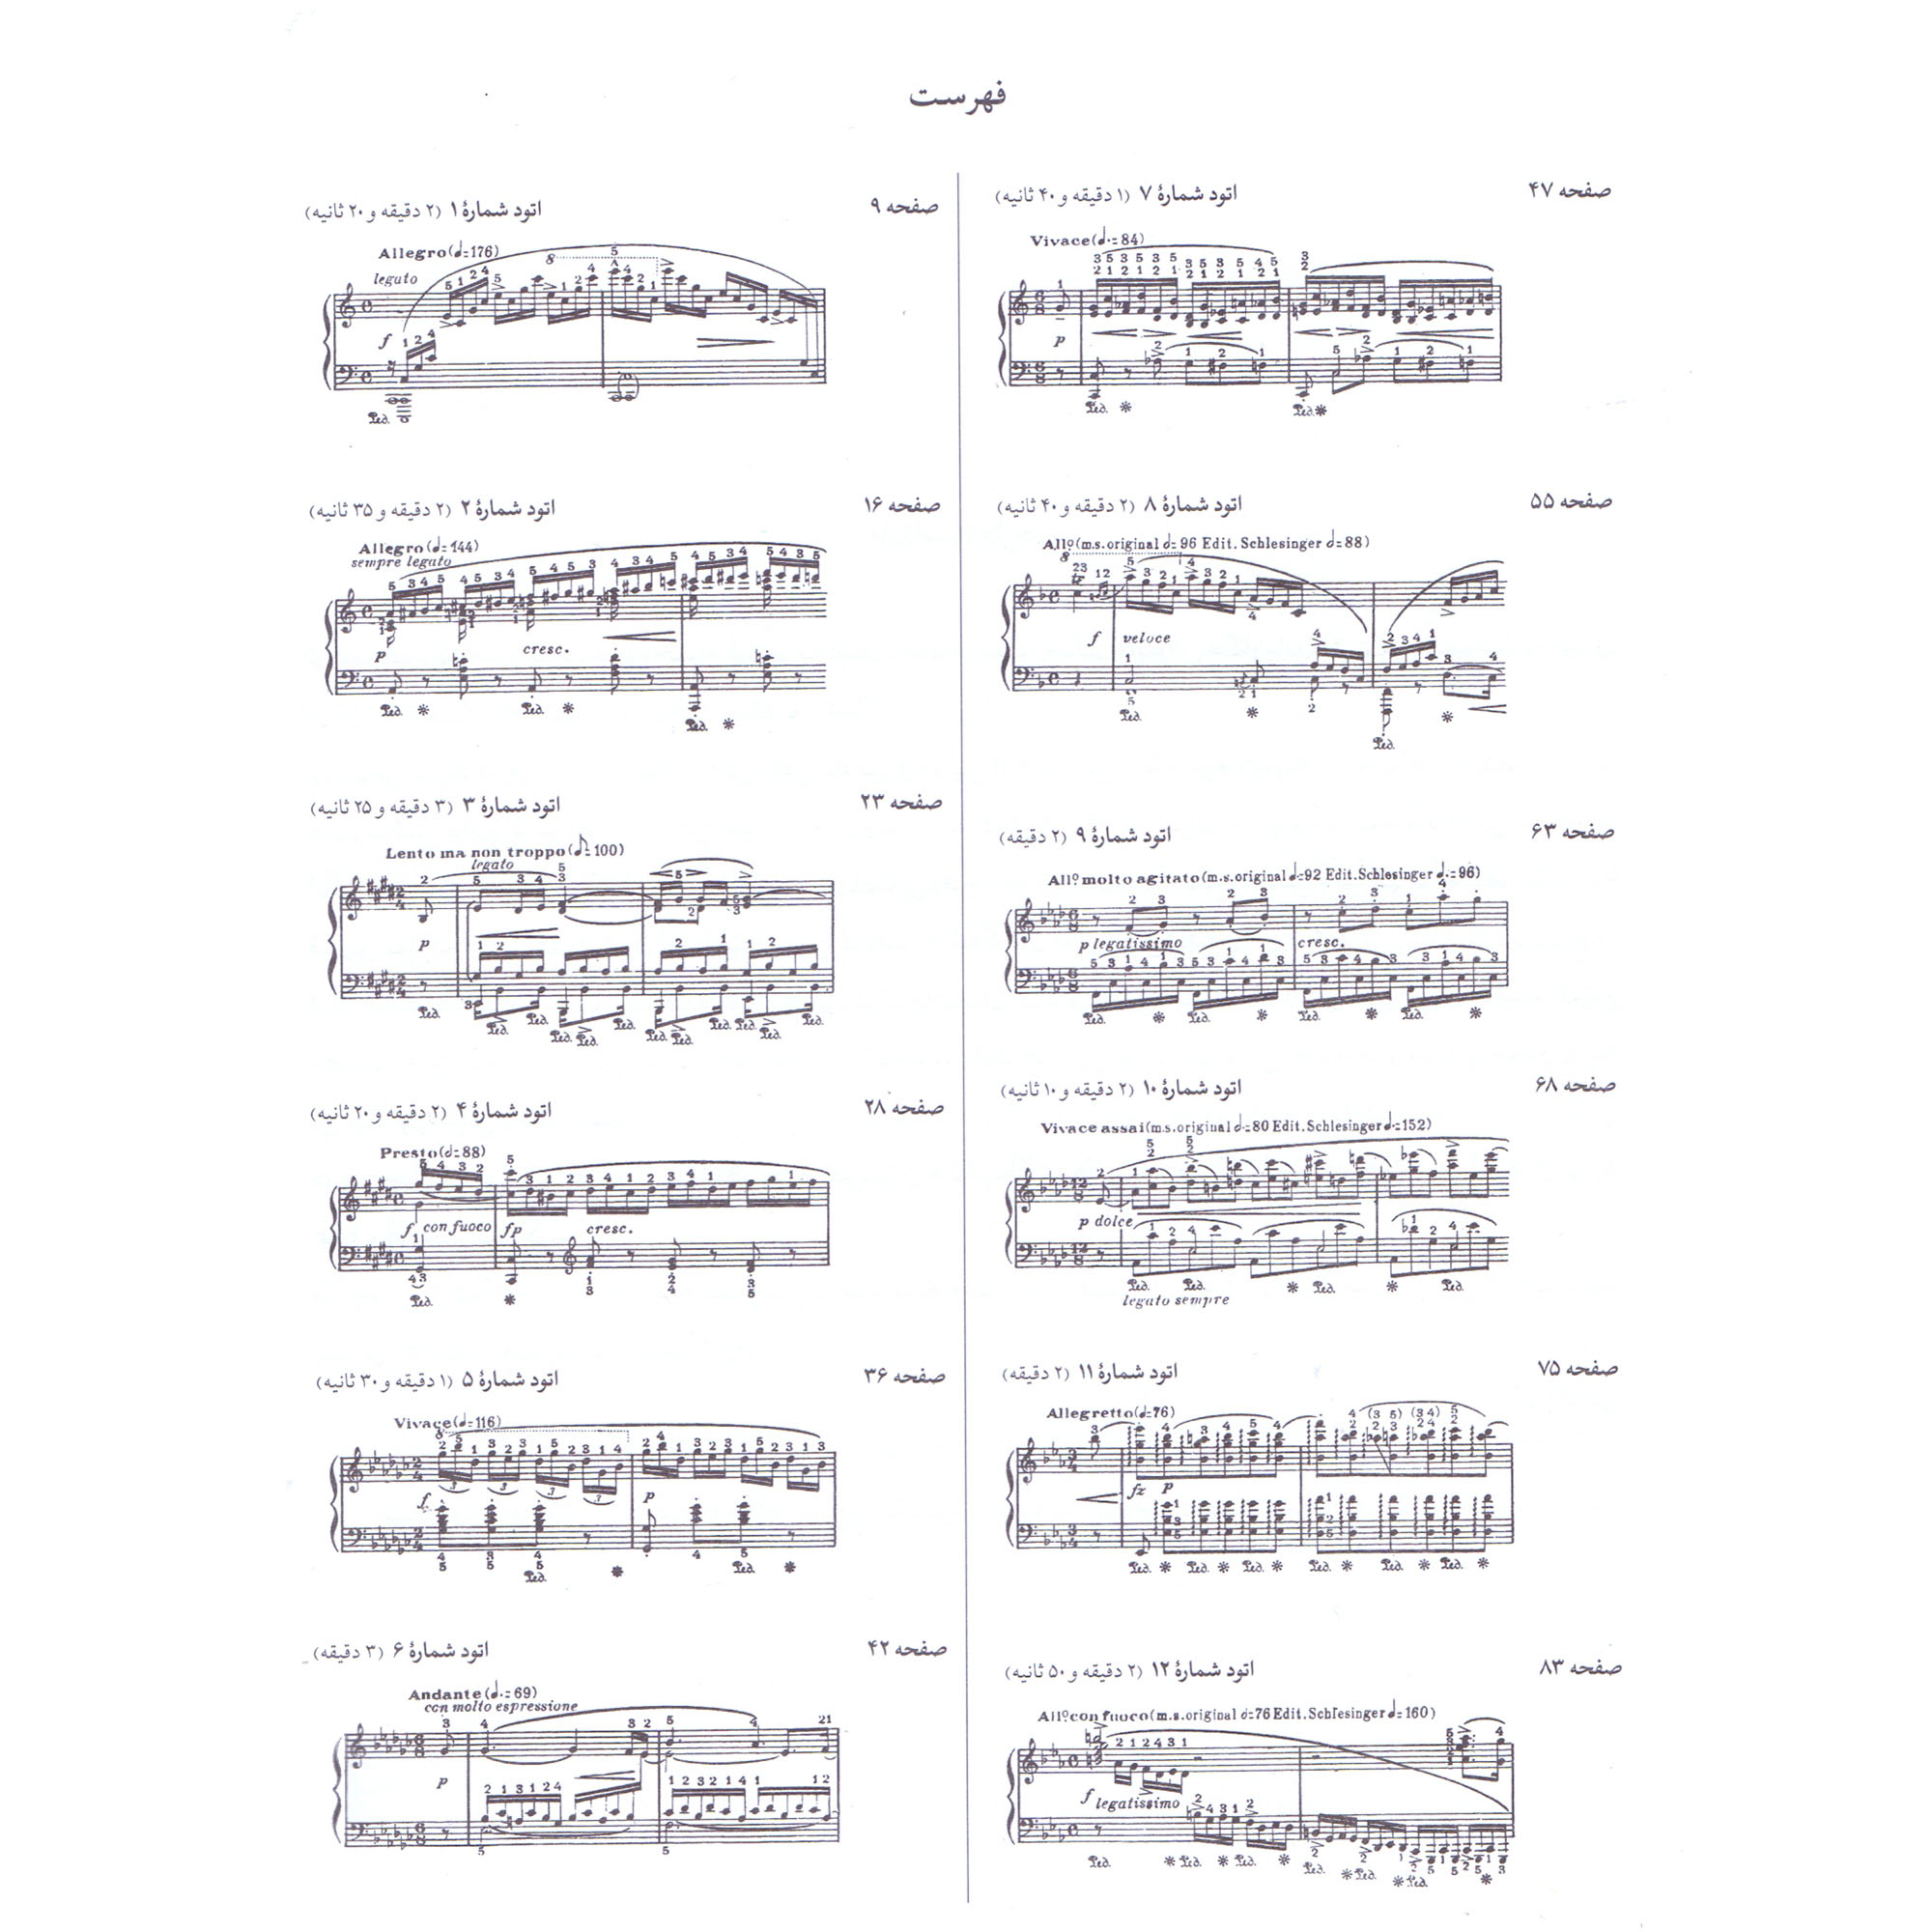 کتاب کورتو شوپن 12 اتود اپوس 10 برای پیانو اثر آلفرد کورتو و فردریک شوپن نشر سرود